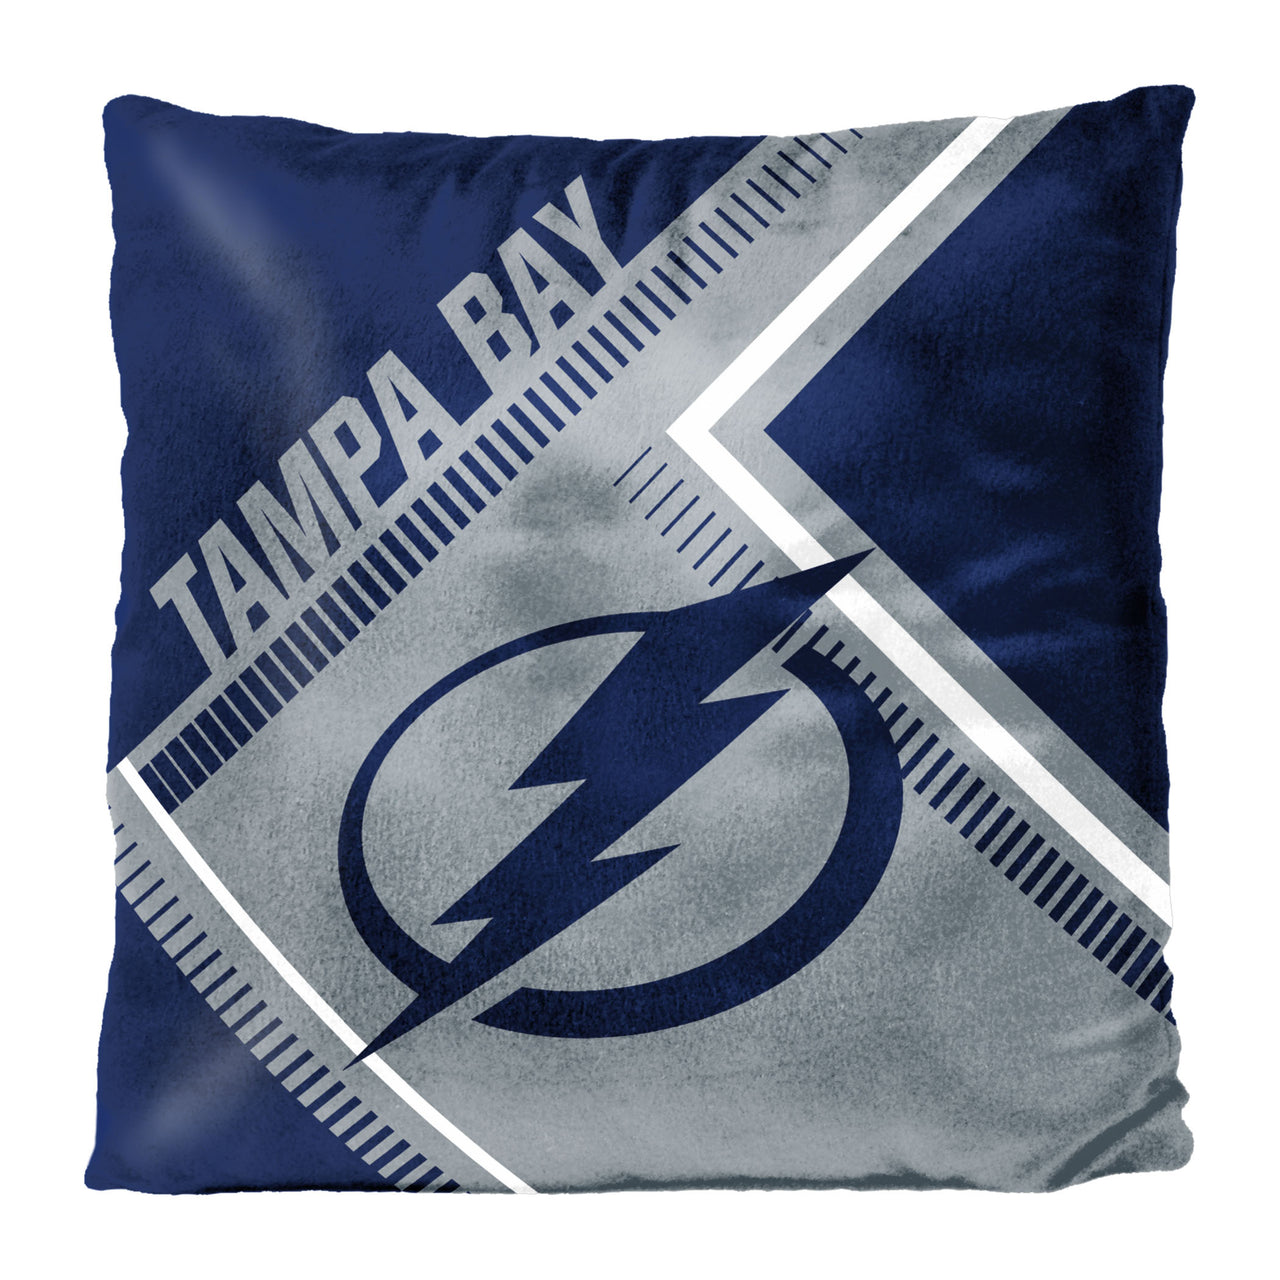 Tampa Bay Lightning Pillow & Blanket Set